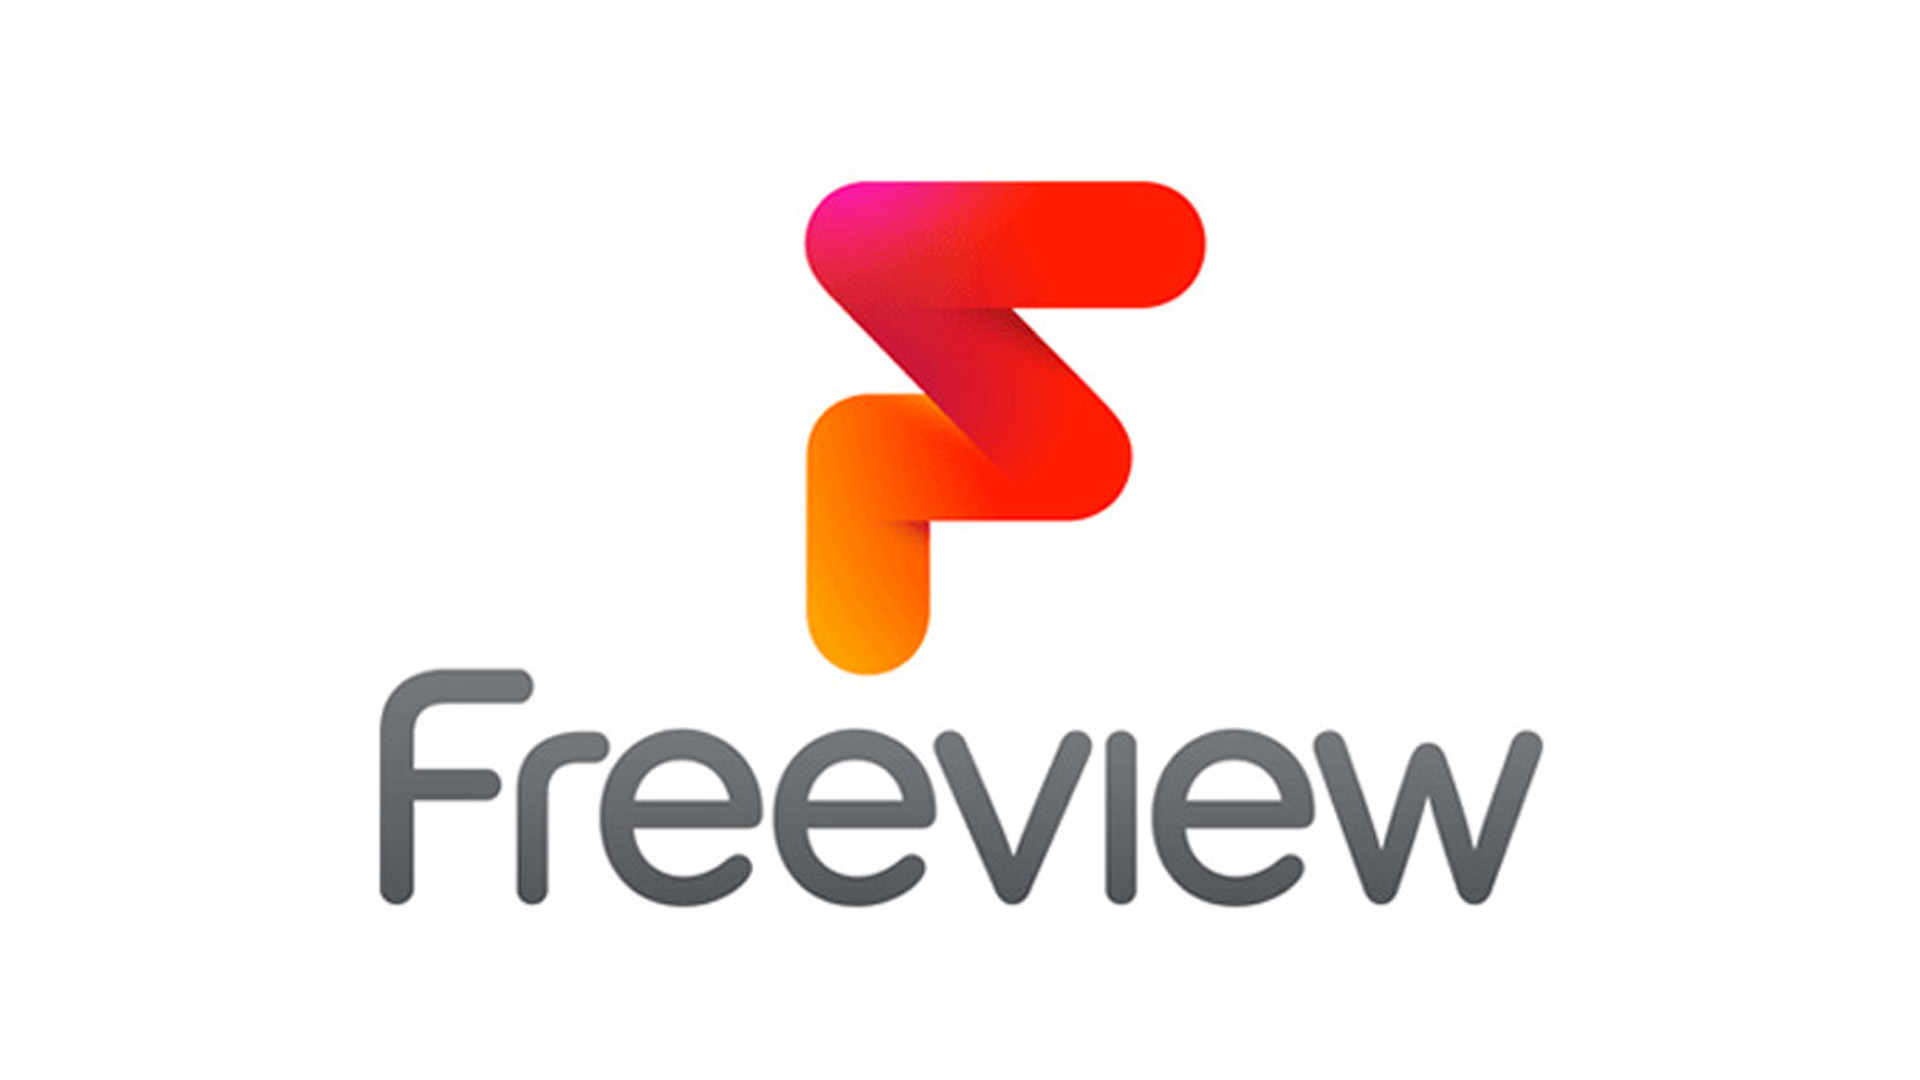 Des changements seront bientôt apportés aux numéros de chaînes Freeview